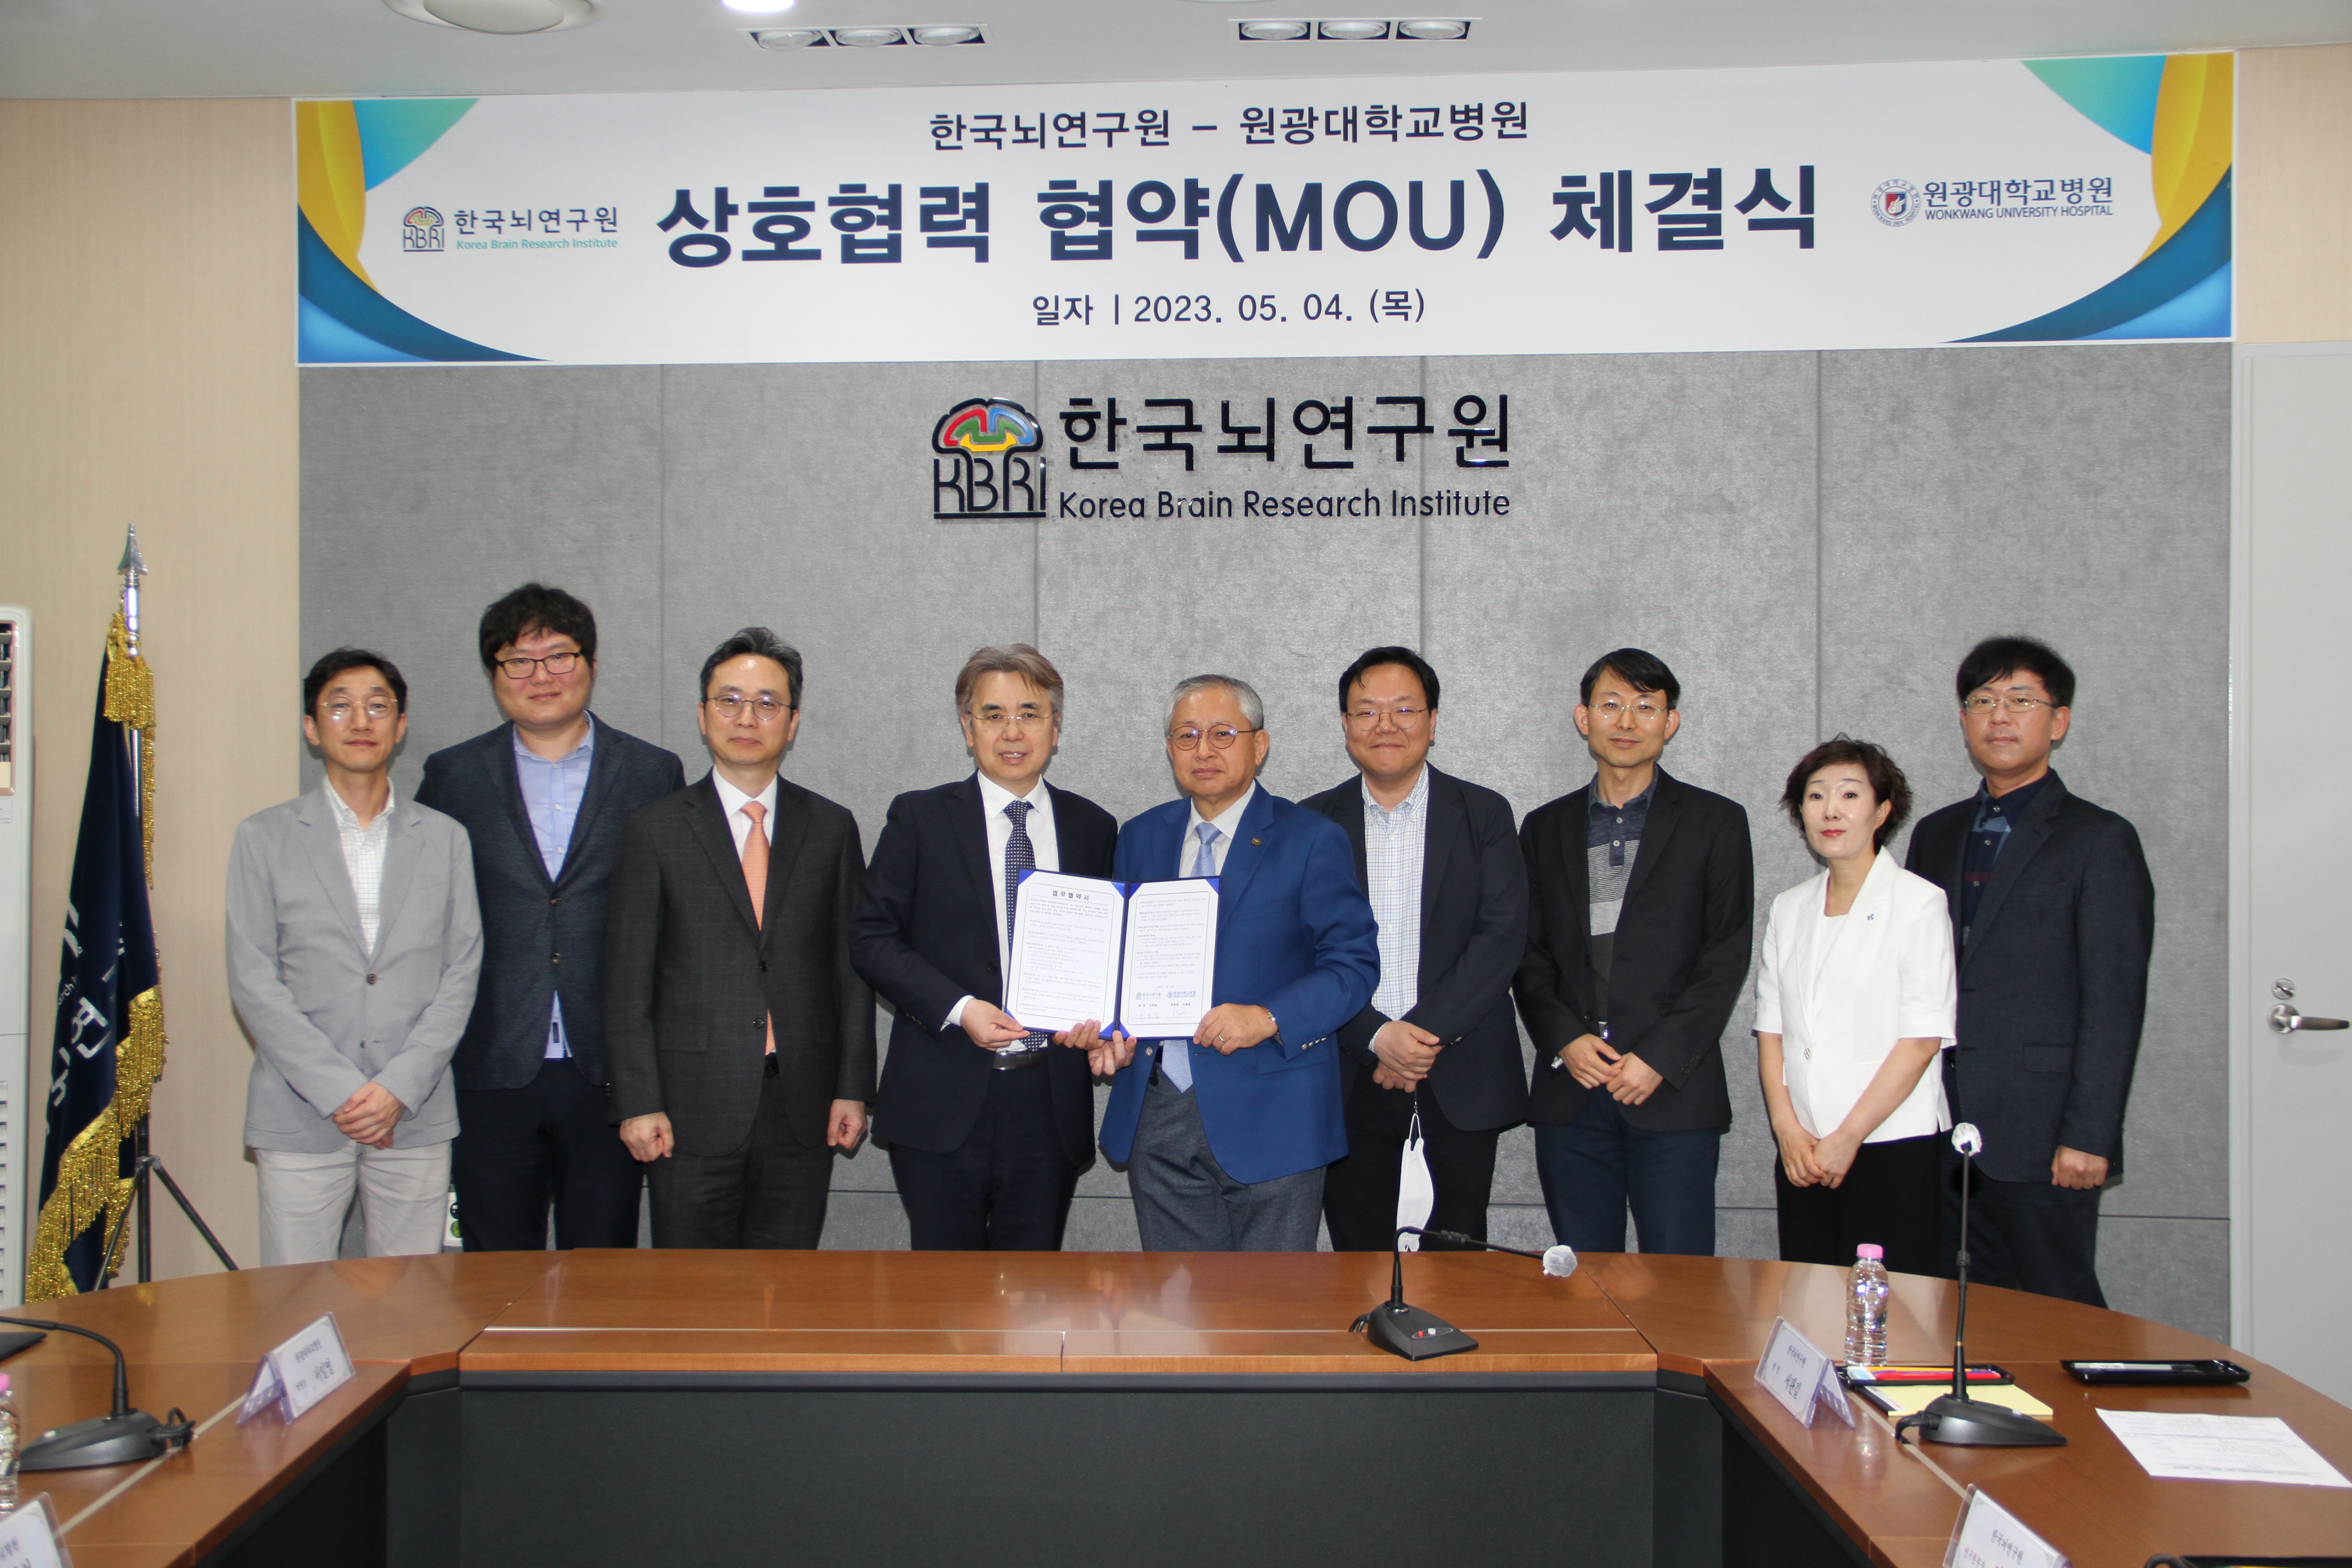 한국뇌연구원-원광대학교병원 상호협력협약 (MOU) 체결식